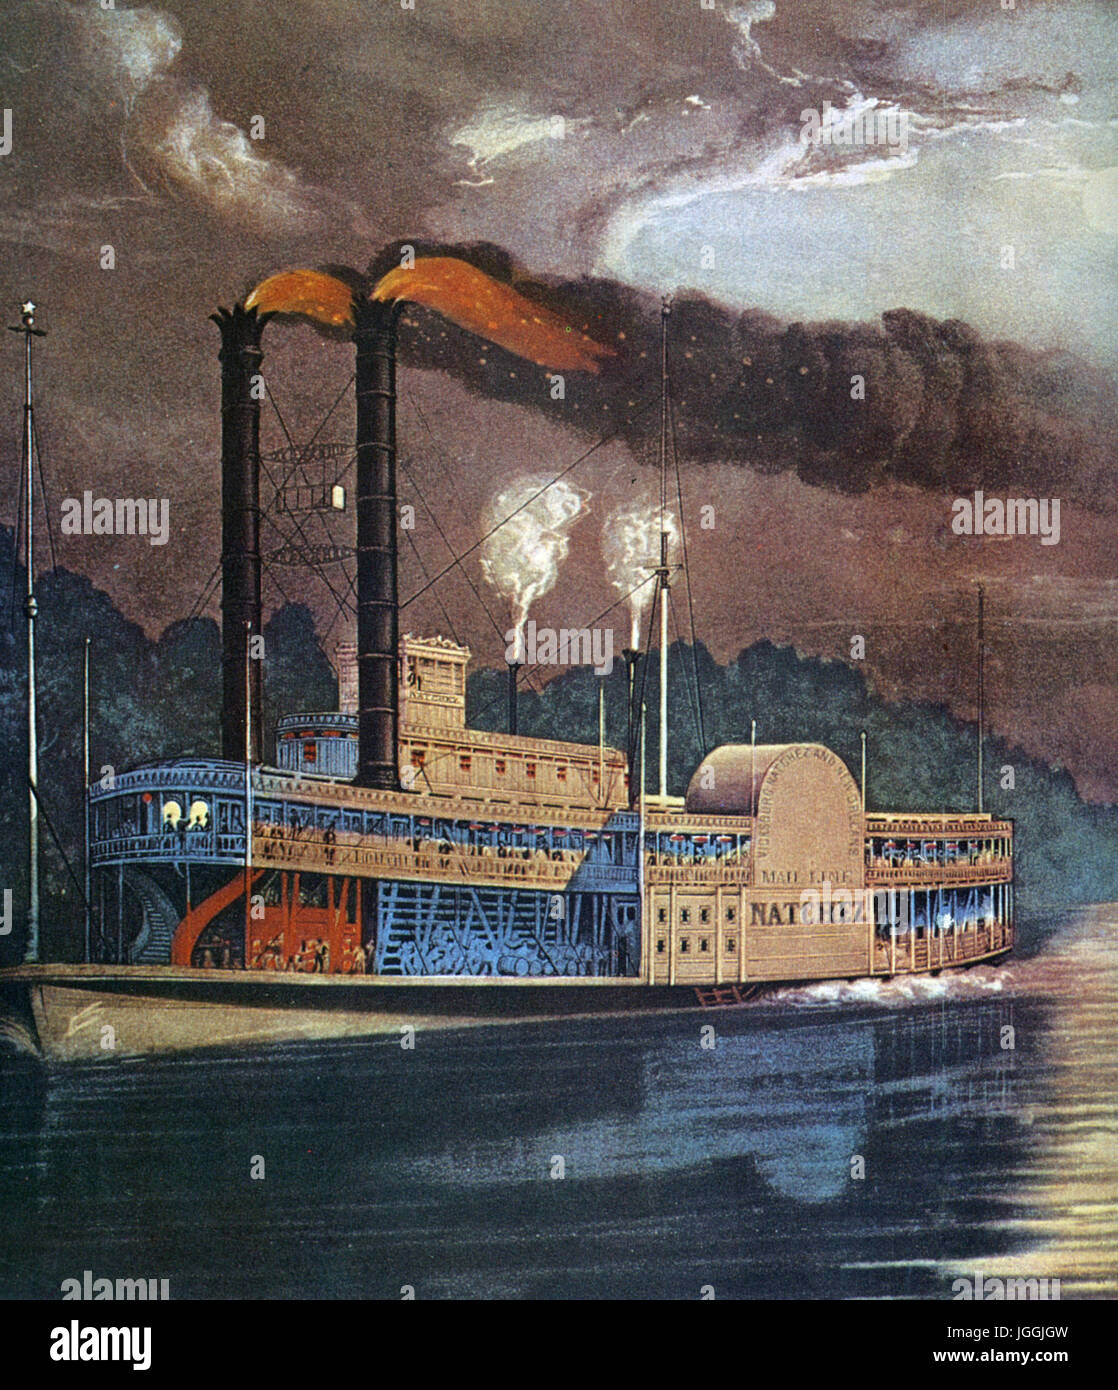 Steamboat NATCHEZ sur le Mississippi vers 1870 à partir d'une impression Currier & Ives Banque D'Images